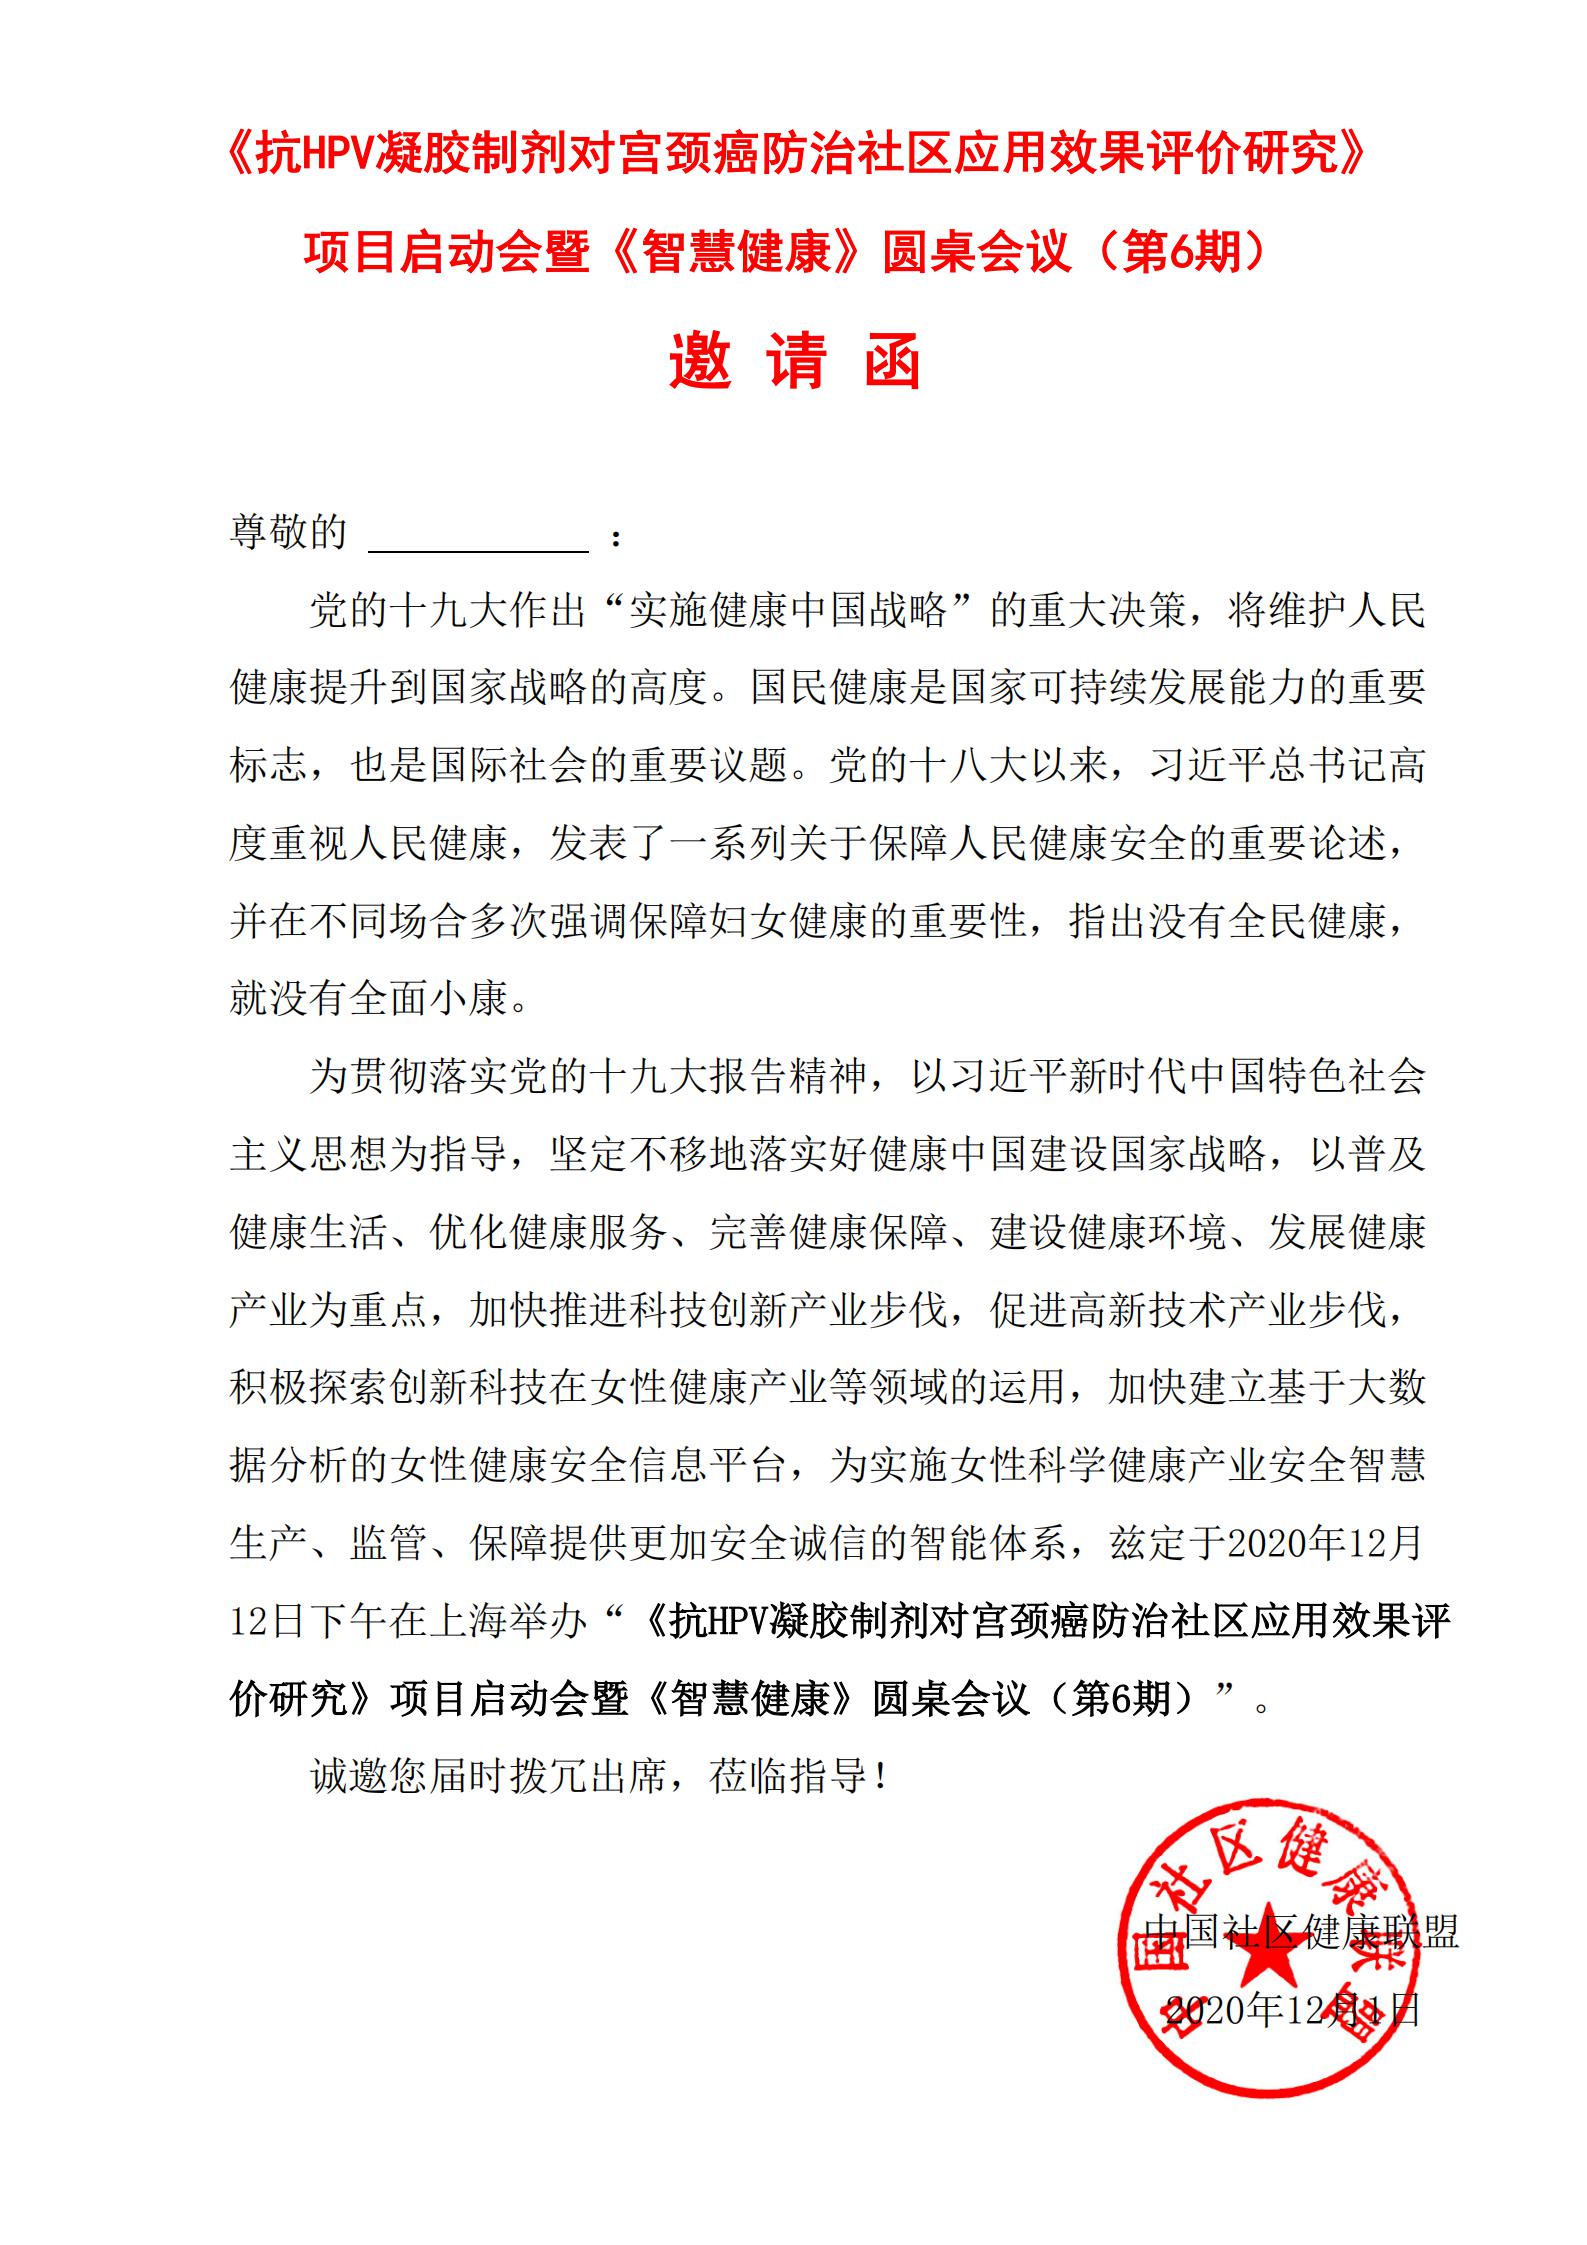 会议邀请函（1212-上海）(2)_00.jpg